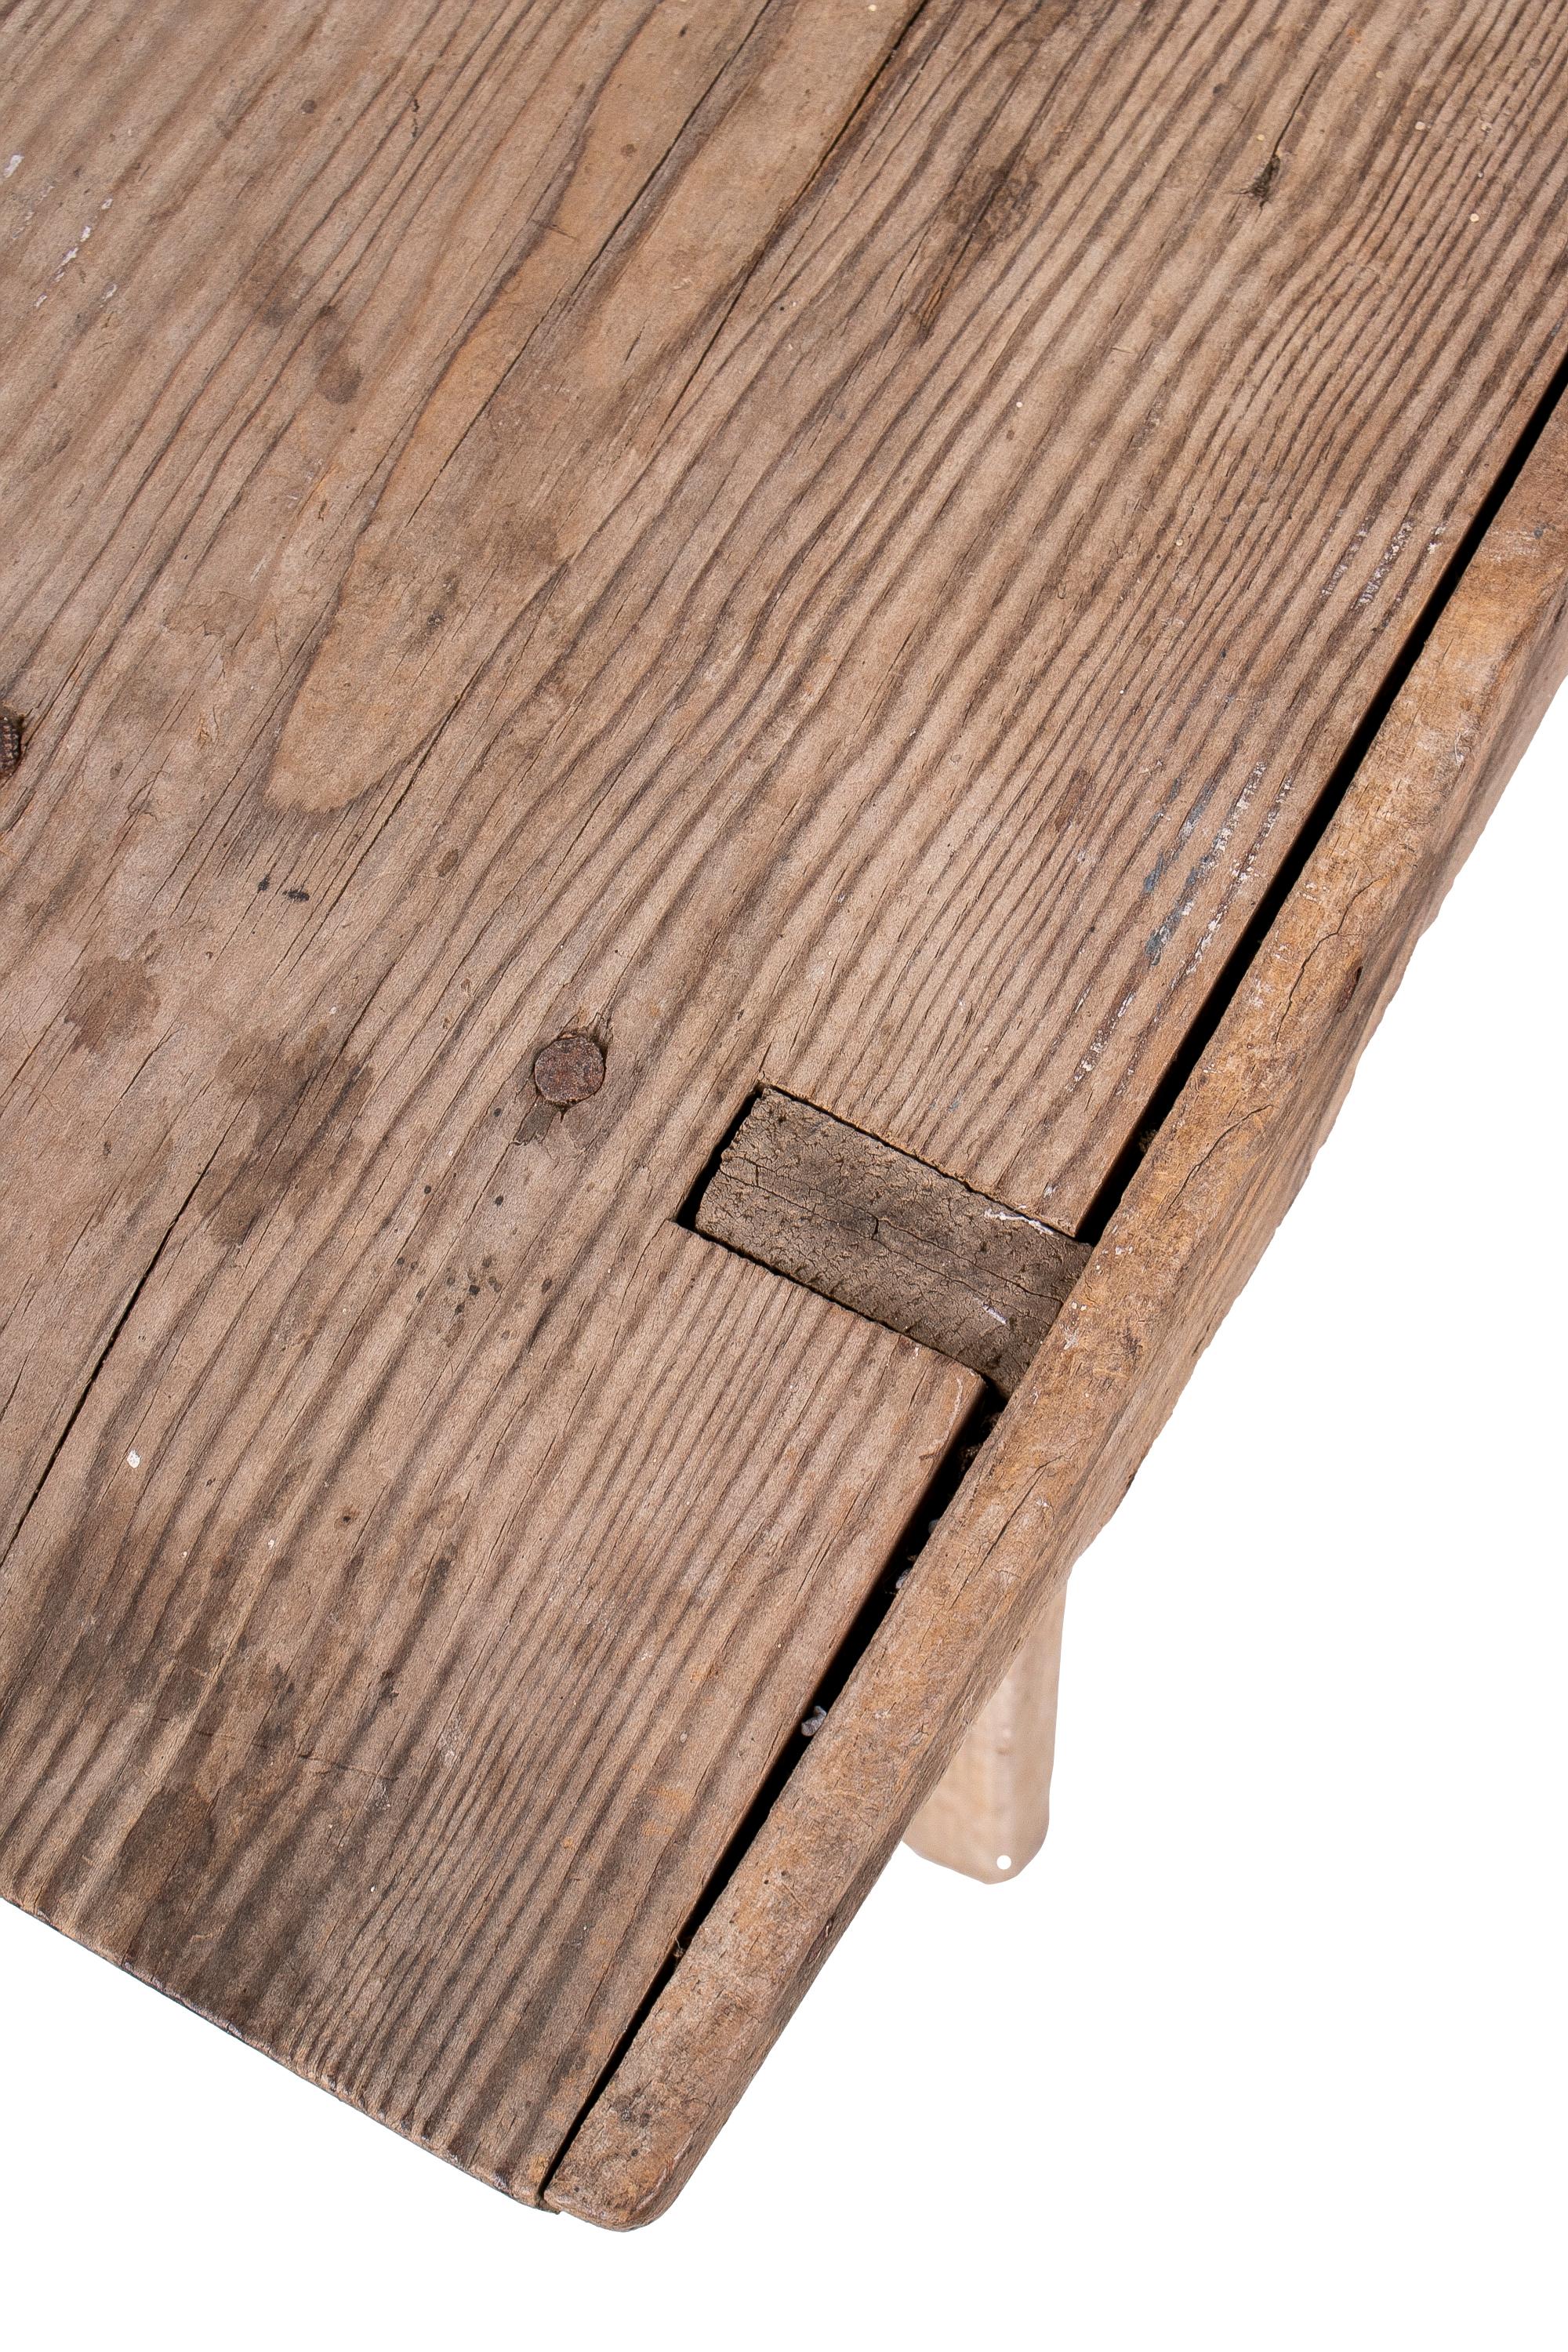 18th Century Spanish Handmade Wooden Bench 4